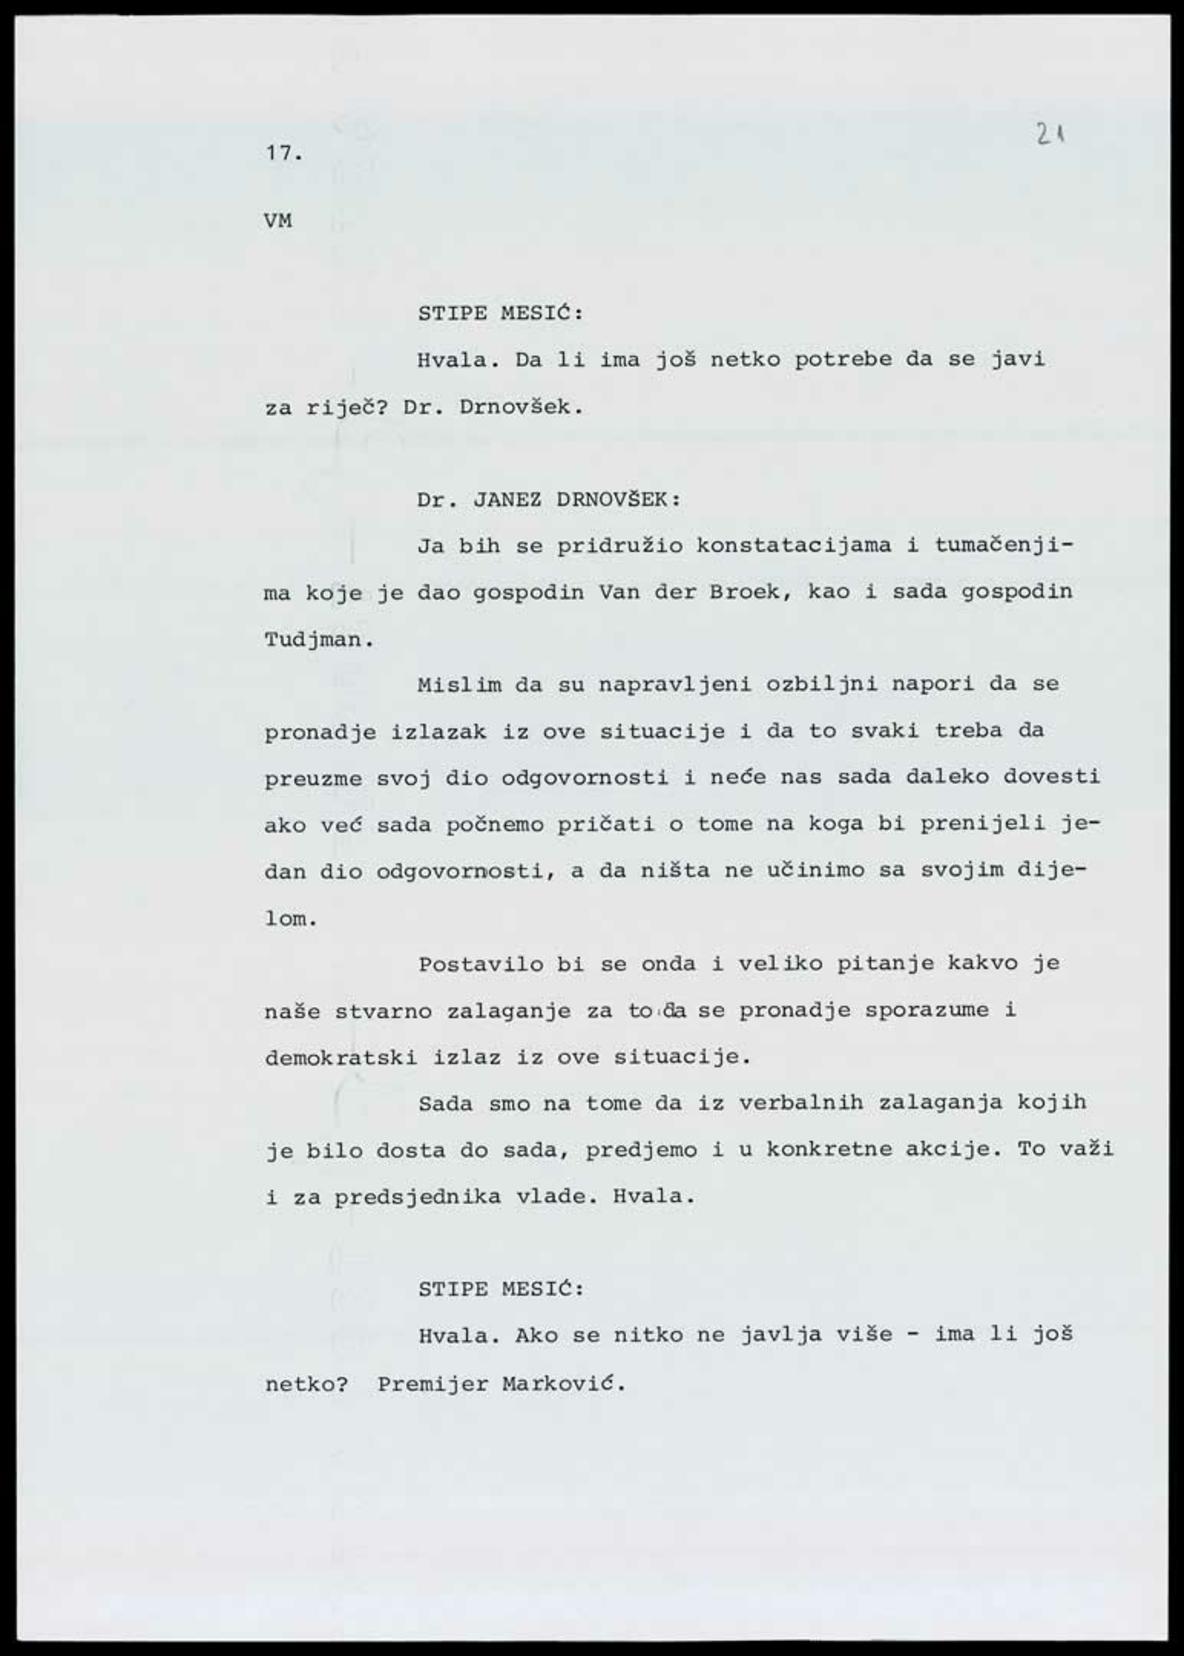 <b>Stenogramske bilješke sa sastanka na Brijunima</b>, izvadak, 7. srpnja 1991.<br><br>
HR-HDA-1741. Ured predsjednika RH Franje Tuđmana. Pismohrana, fasc. 195
